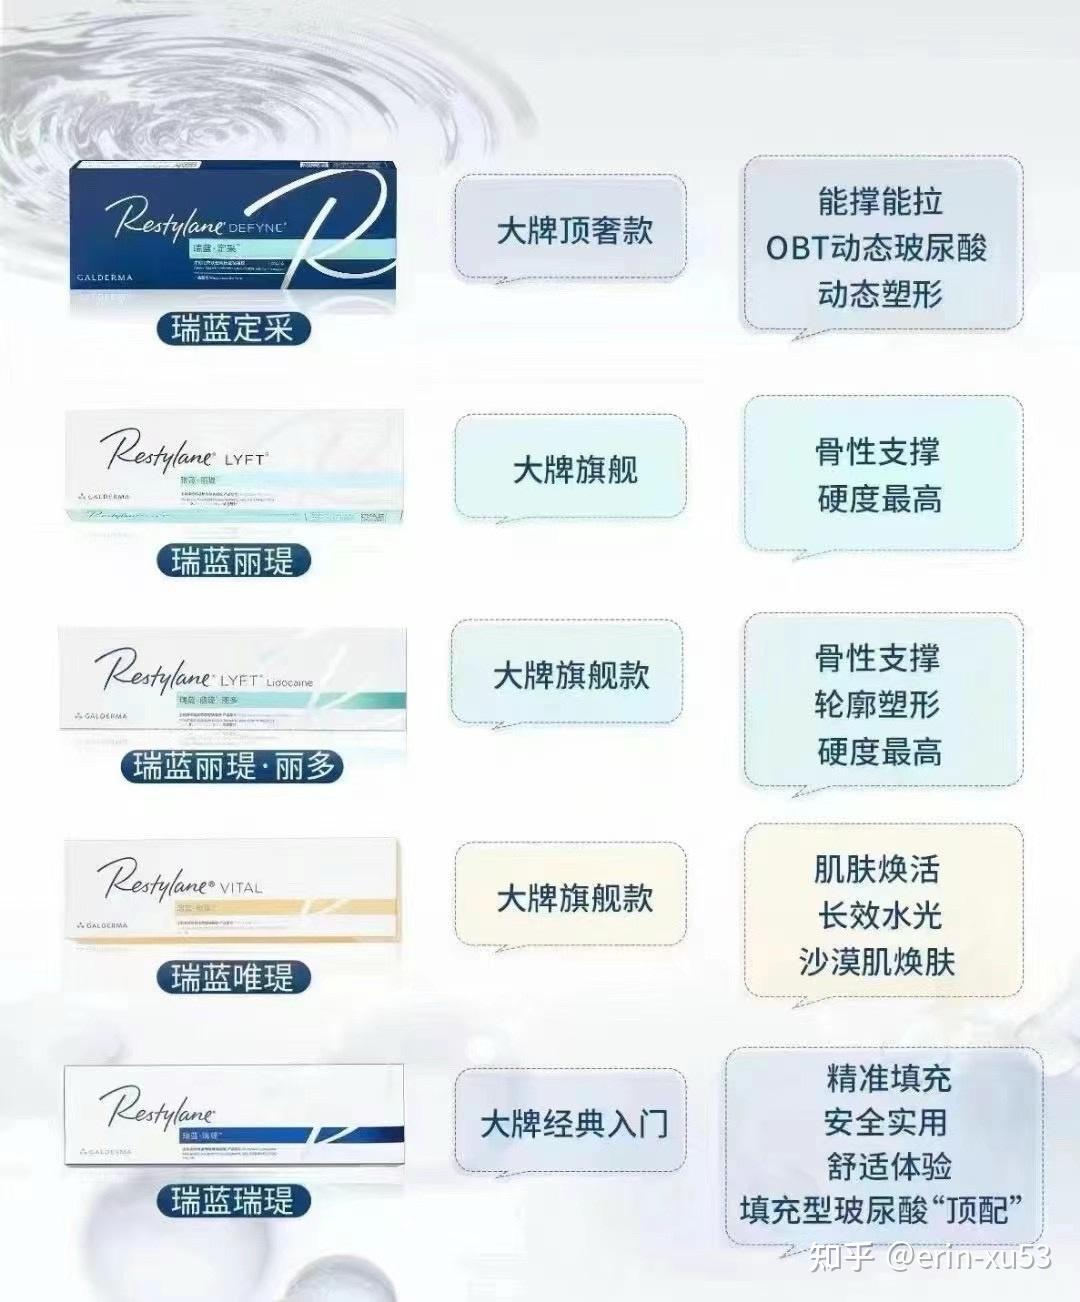 瑞蓝® 2 | 瑞蓝中文官方网站